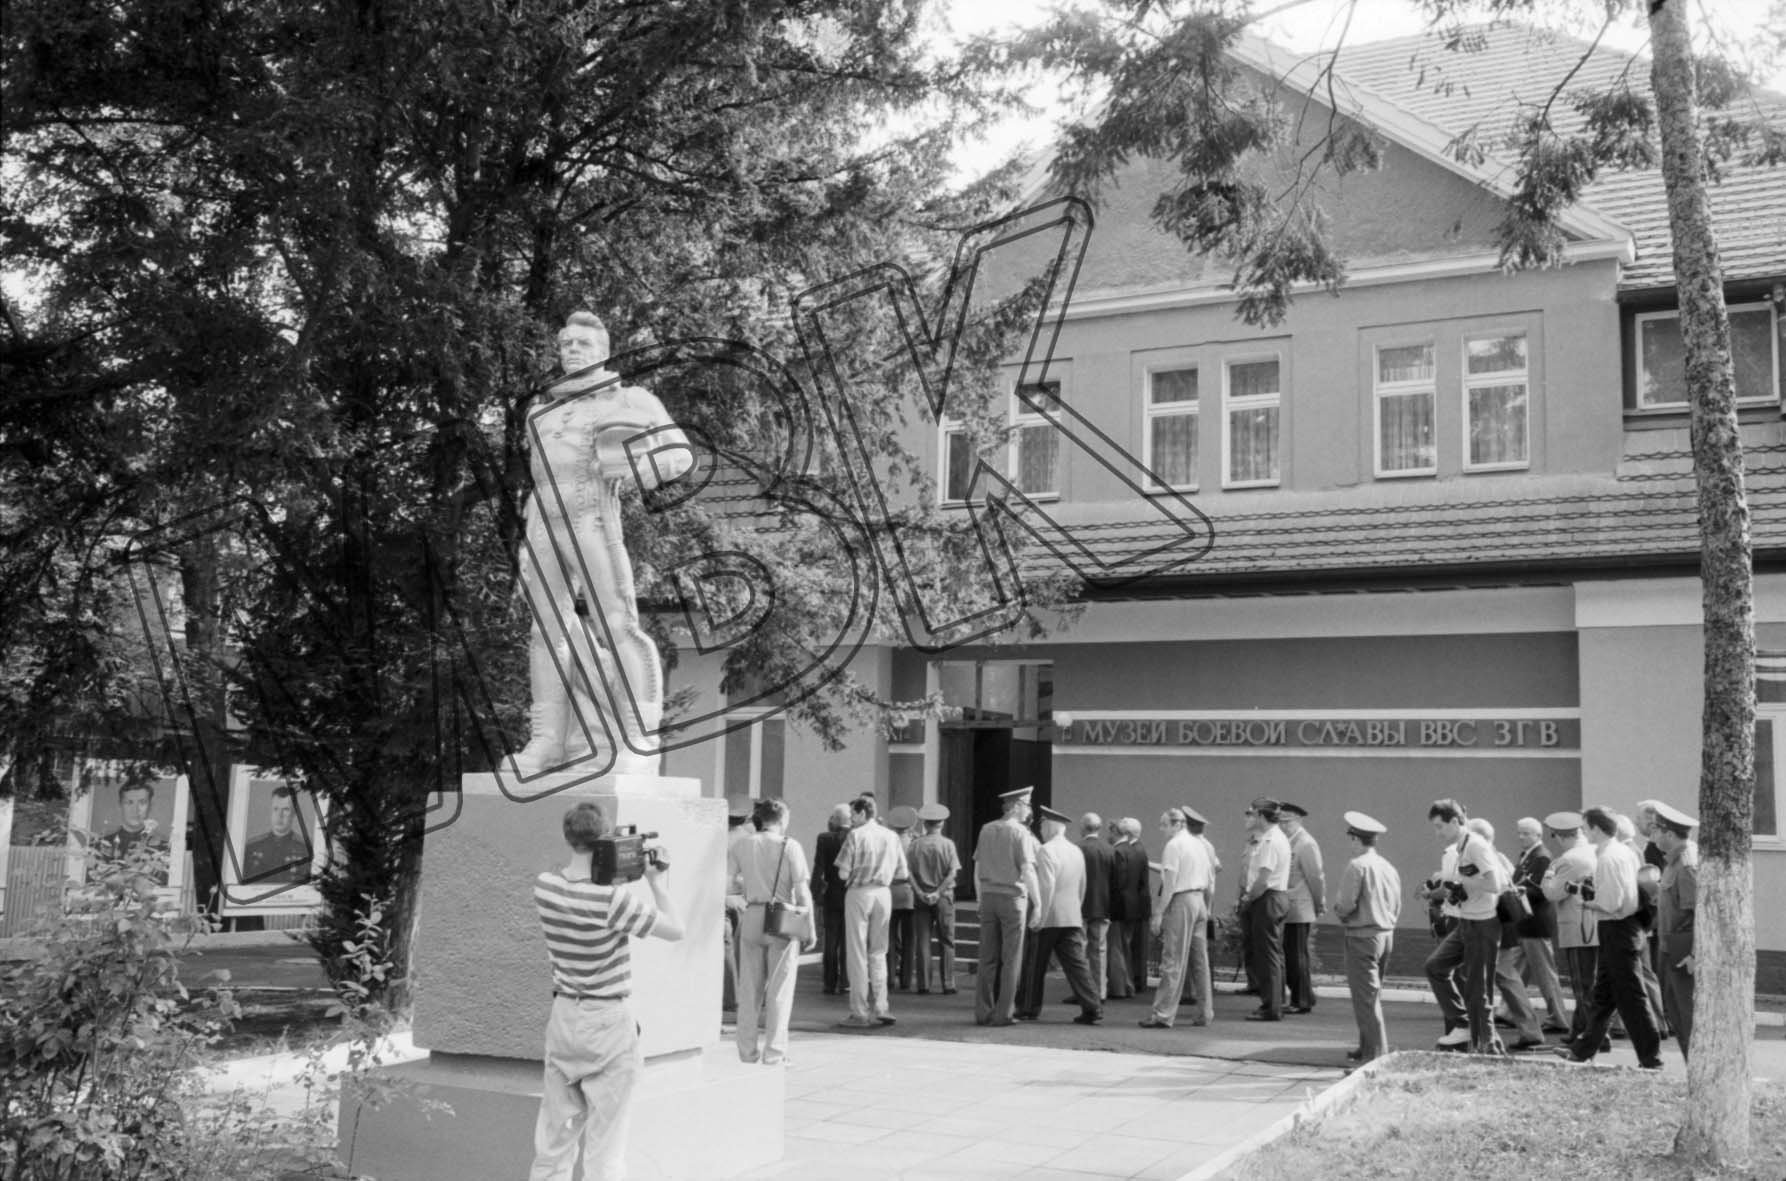 Fotografie: Besuch des Fliegermuseums der WGT durch die Veteranen der deutschen und sowjetischen Luftwaffe, Wünsdorf, 7. August 1992 (Museum Berlin-Karlshorst RR-P)